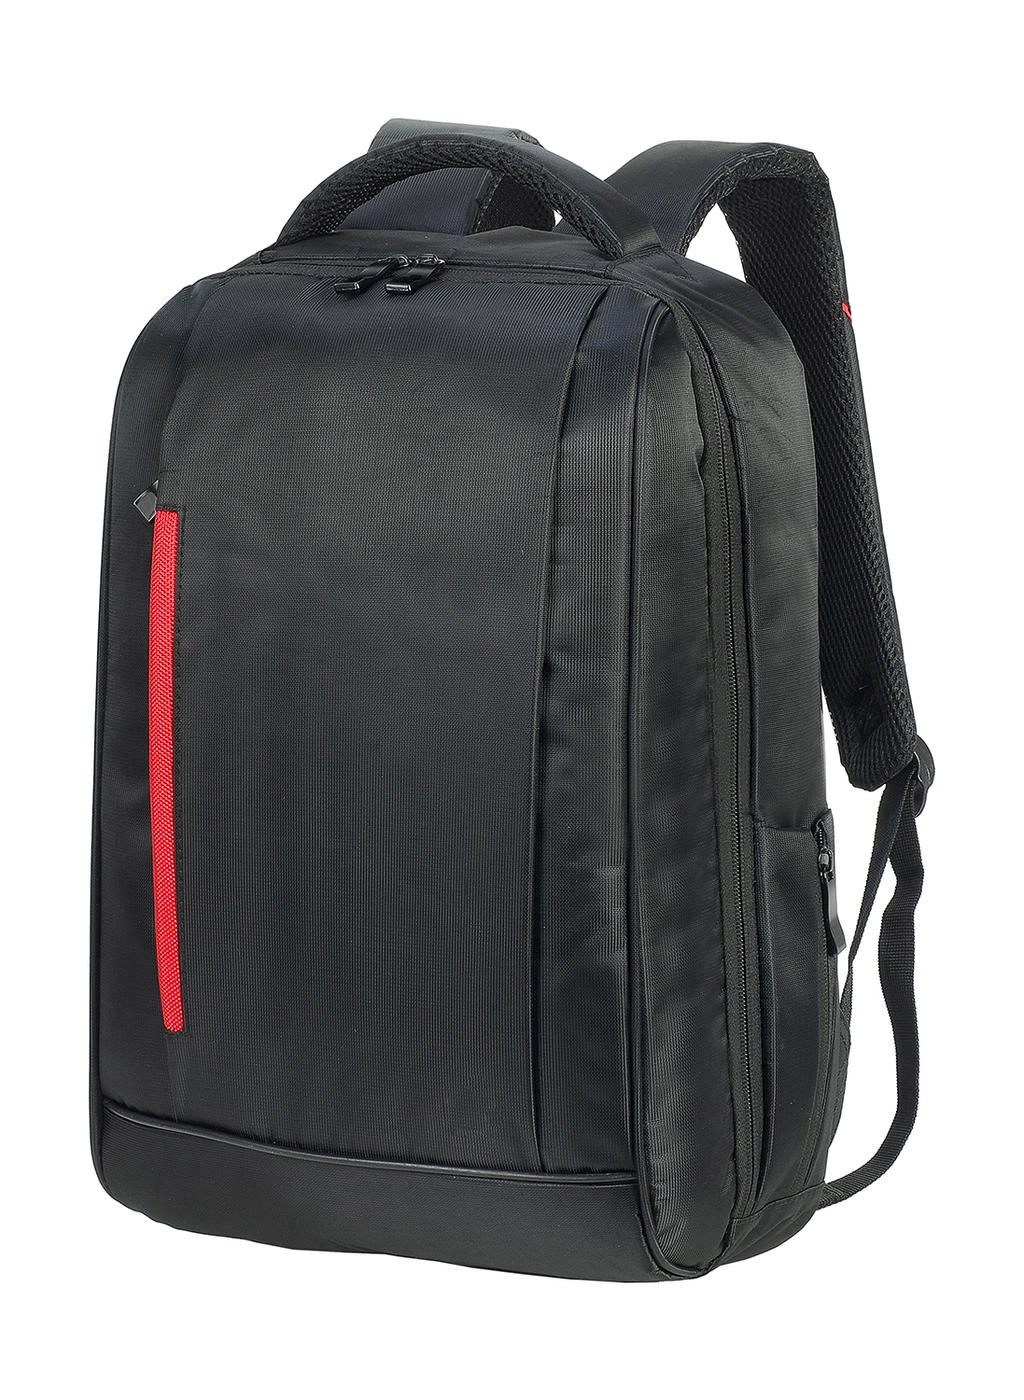 Kiel Urban Laptop Backpack zum Besticken und Bedrucken in der Farbe Black/Red mit Ihren Logo, Schriftzug oder Motiv.